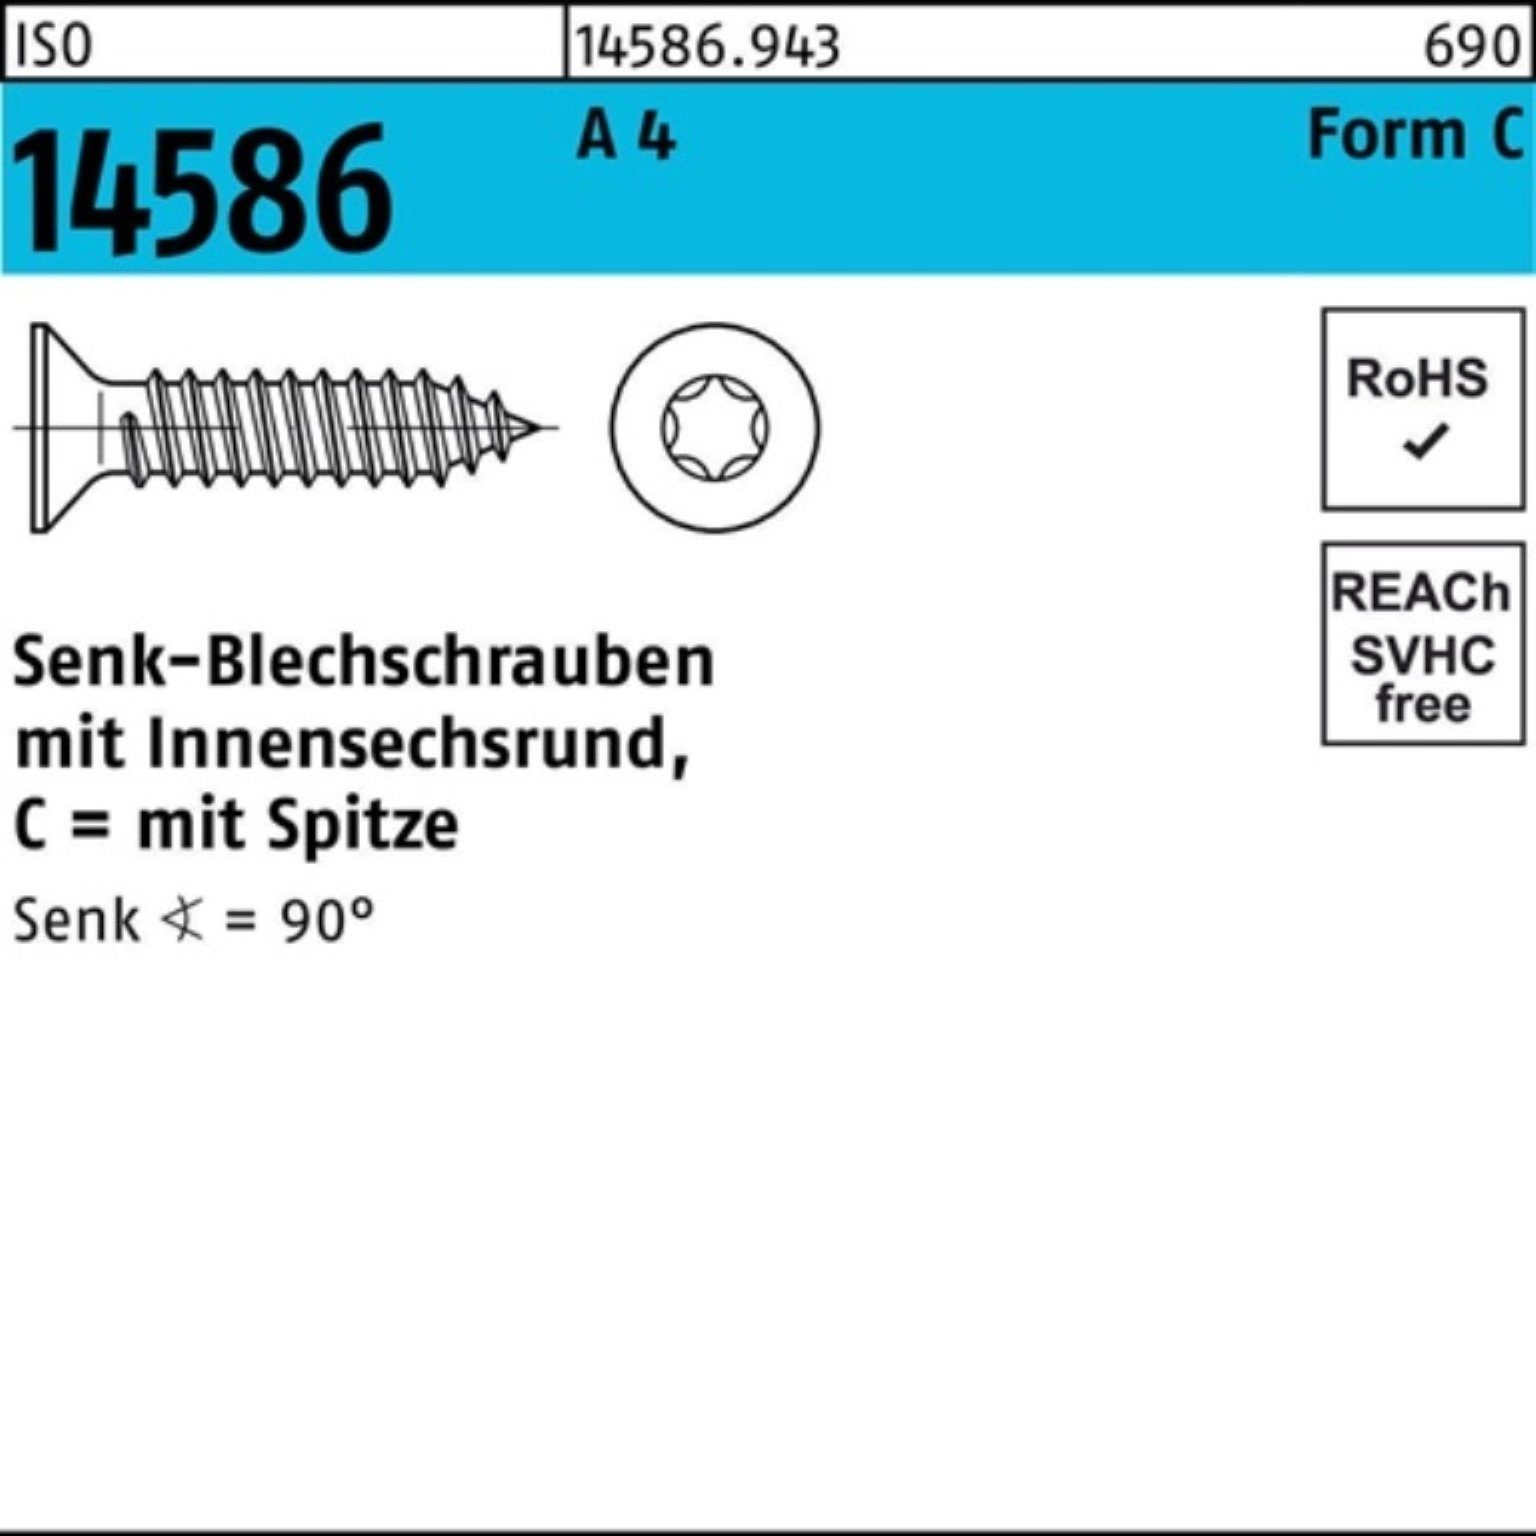 Reyher Schraube 500er Pack Senkblechschraube ISO 14586 ISR/Spitze 6,3x 25-T30 A 4 500